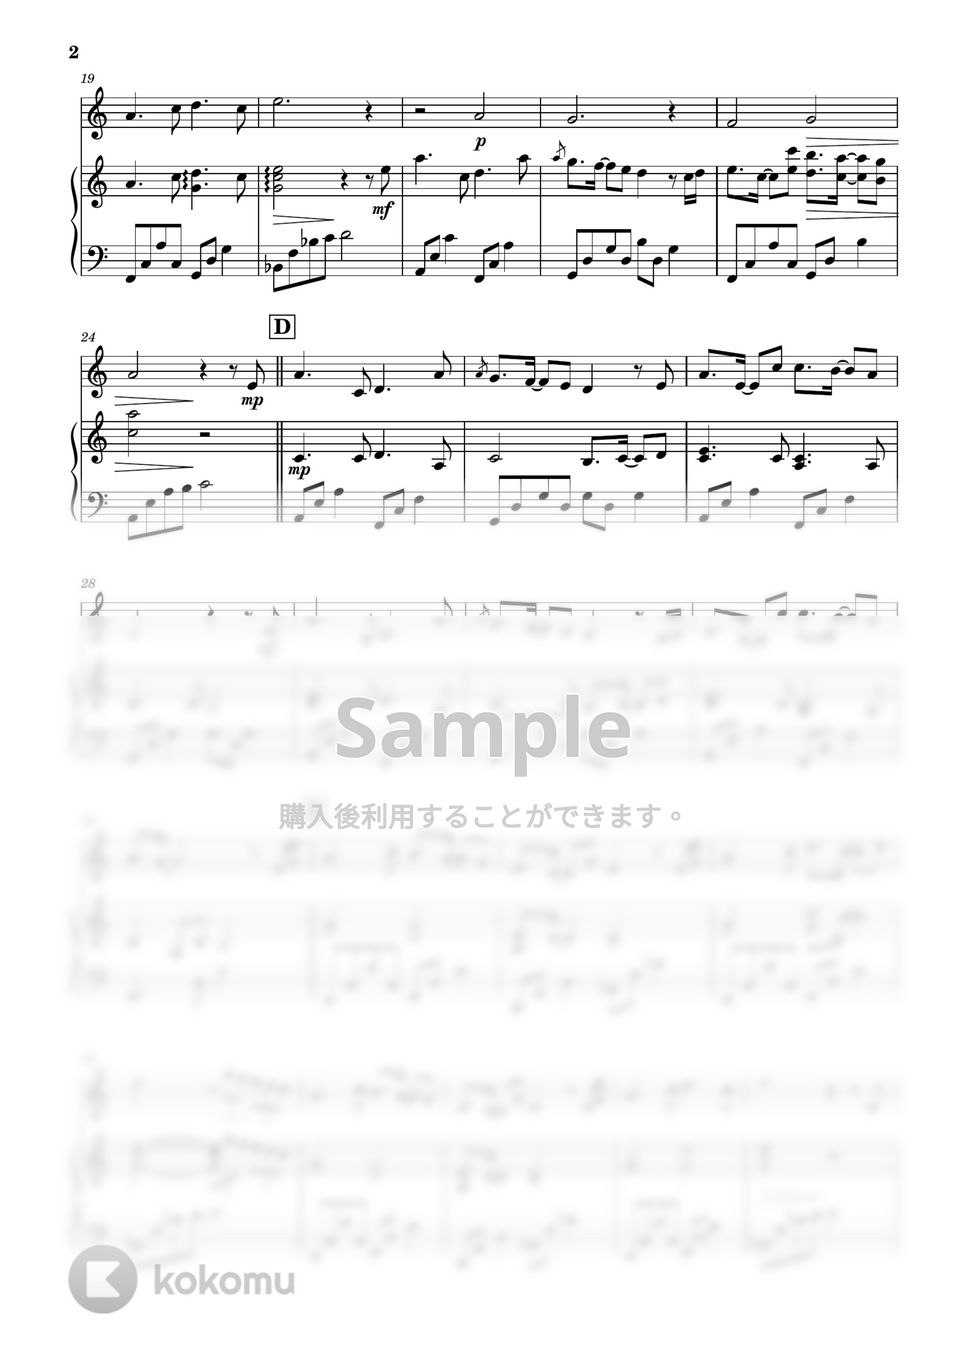 羽毛田丈史 - 地球に乾杯 (フルート&ピアノ伴奏) by PiaFlu